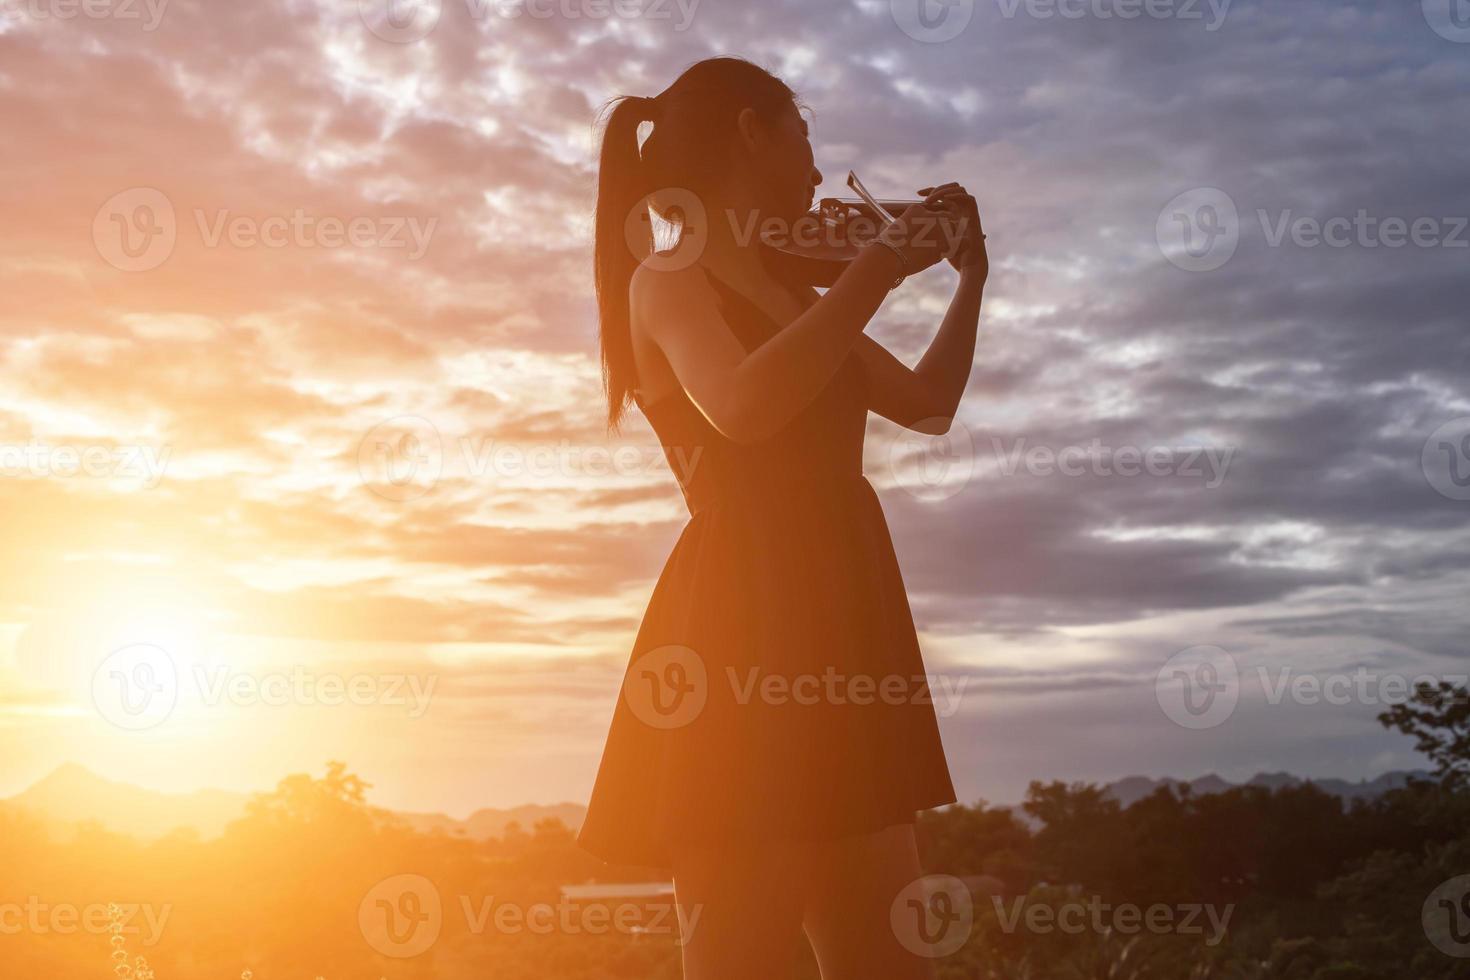 jonge vrouw die viool speelt met bergen op de achtergrond foto